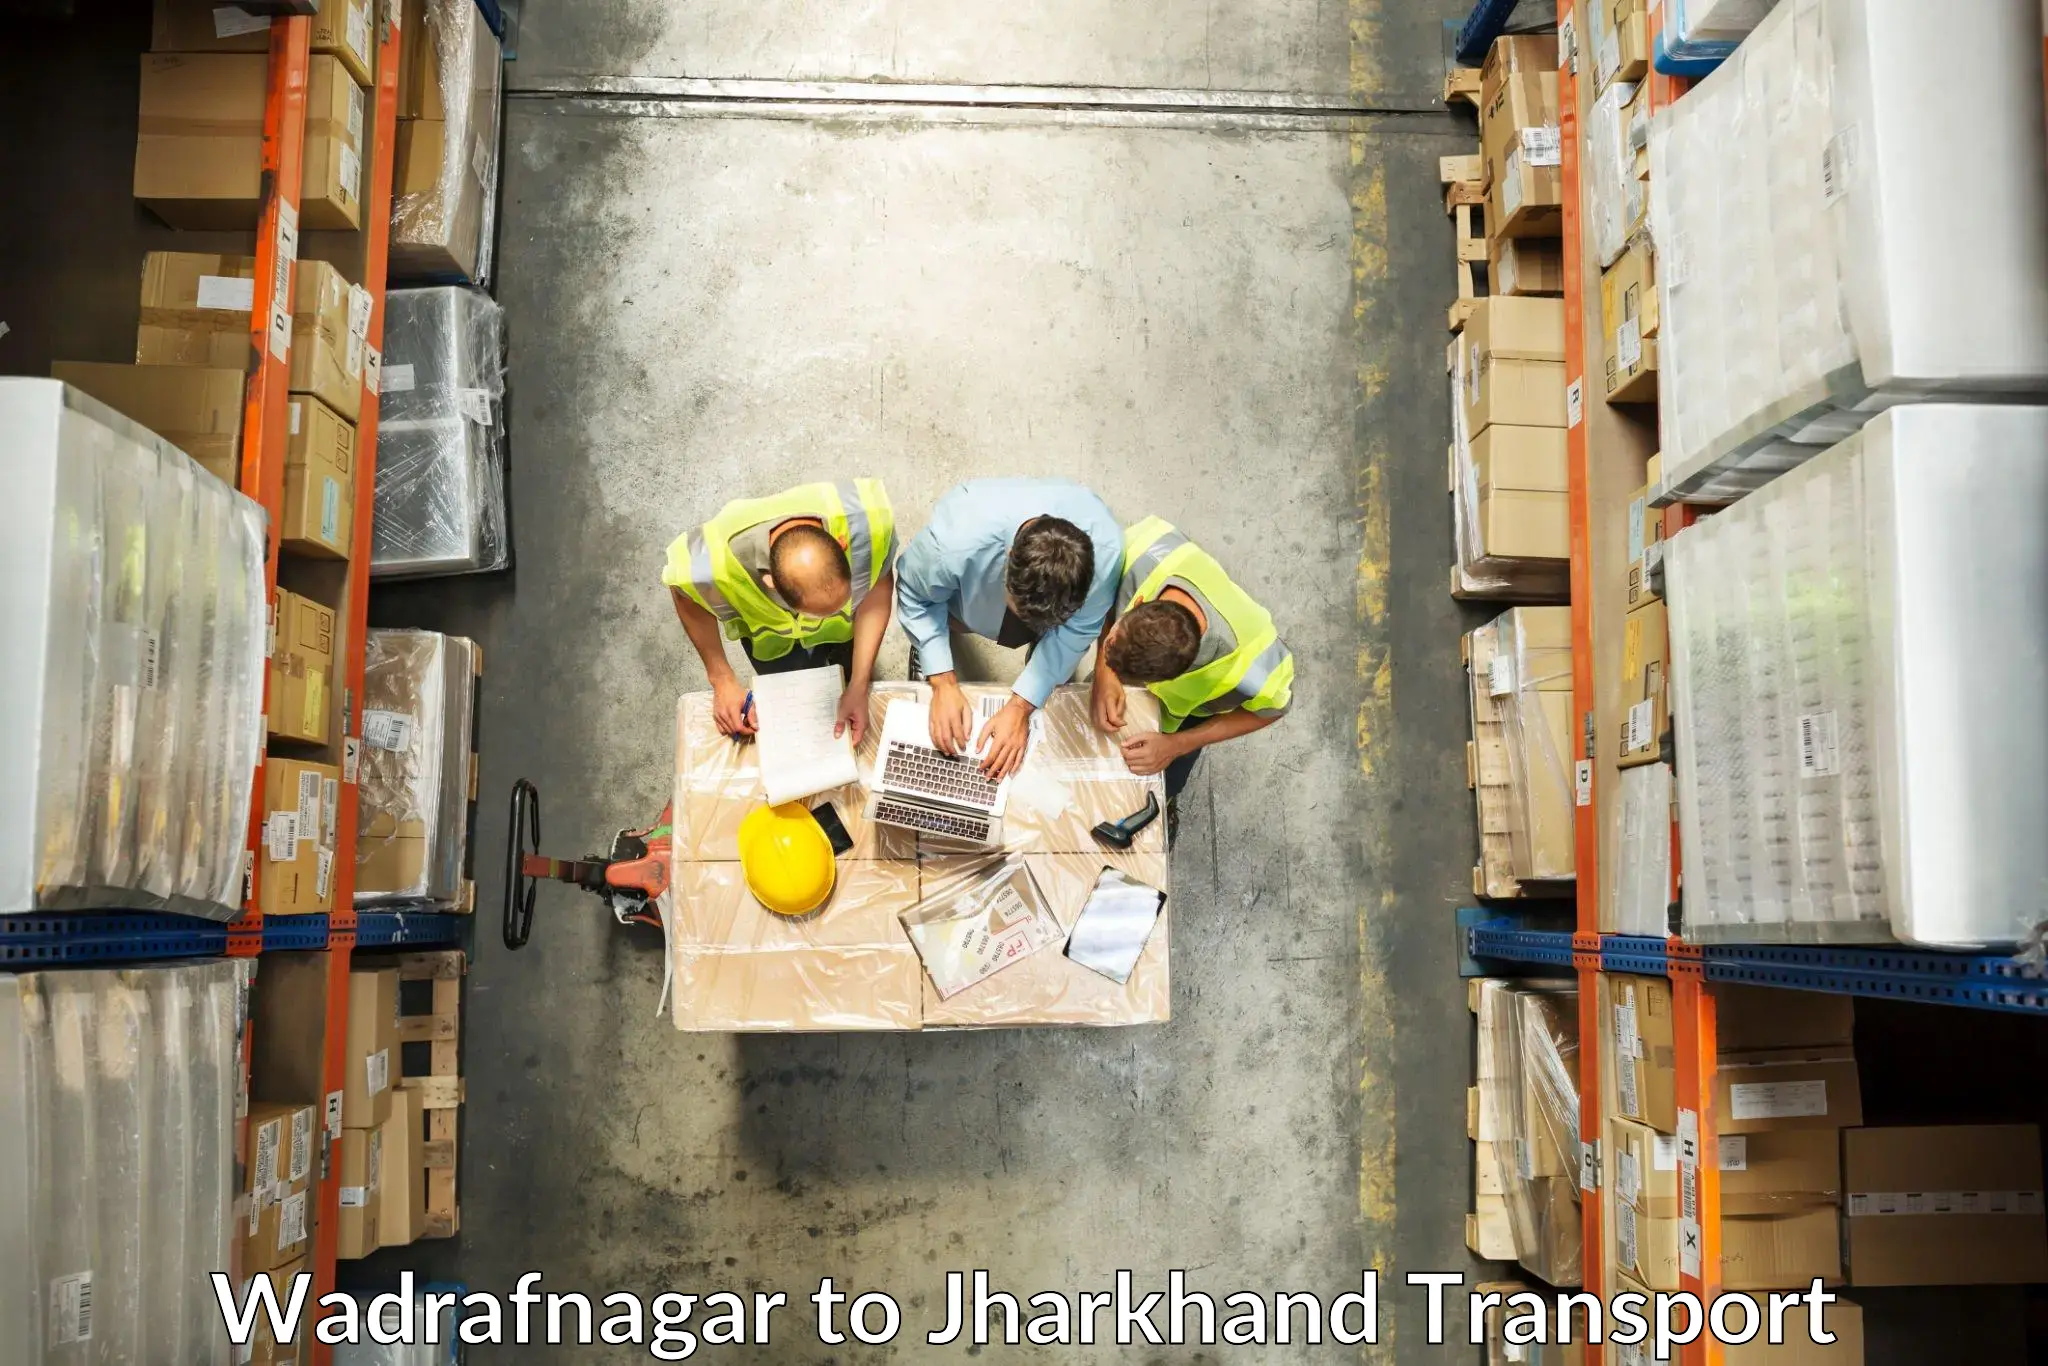 Intercity transport Wadrafnagar to Jharkhand